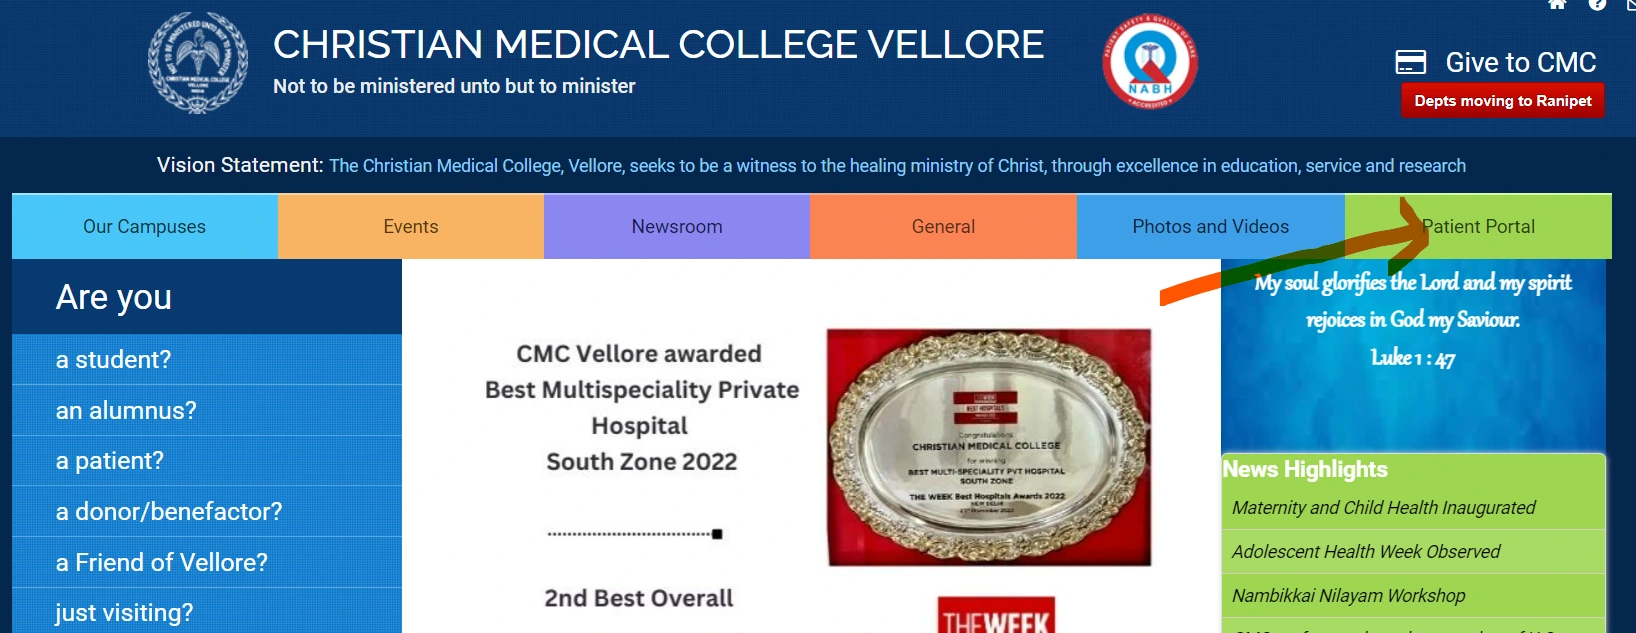 CMC Vellore Patient Portal